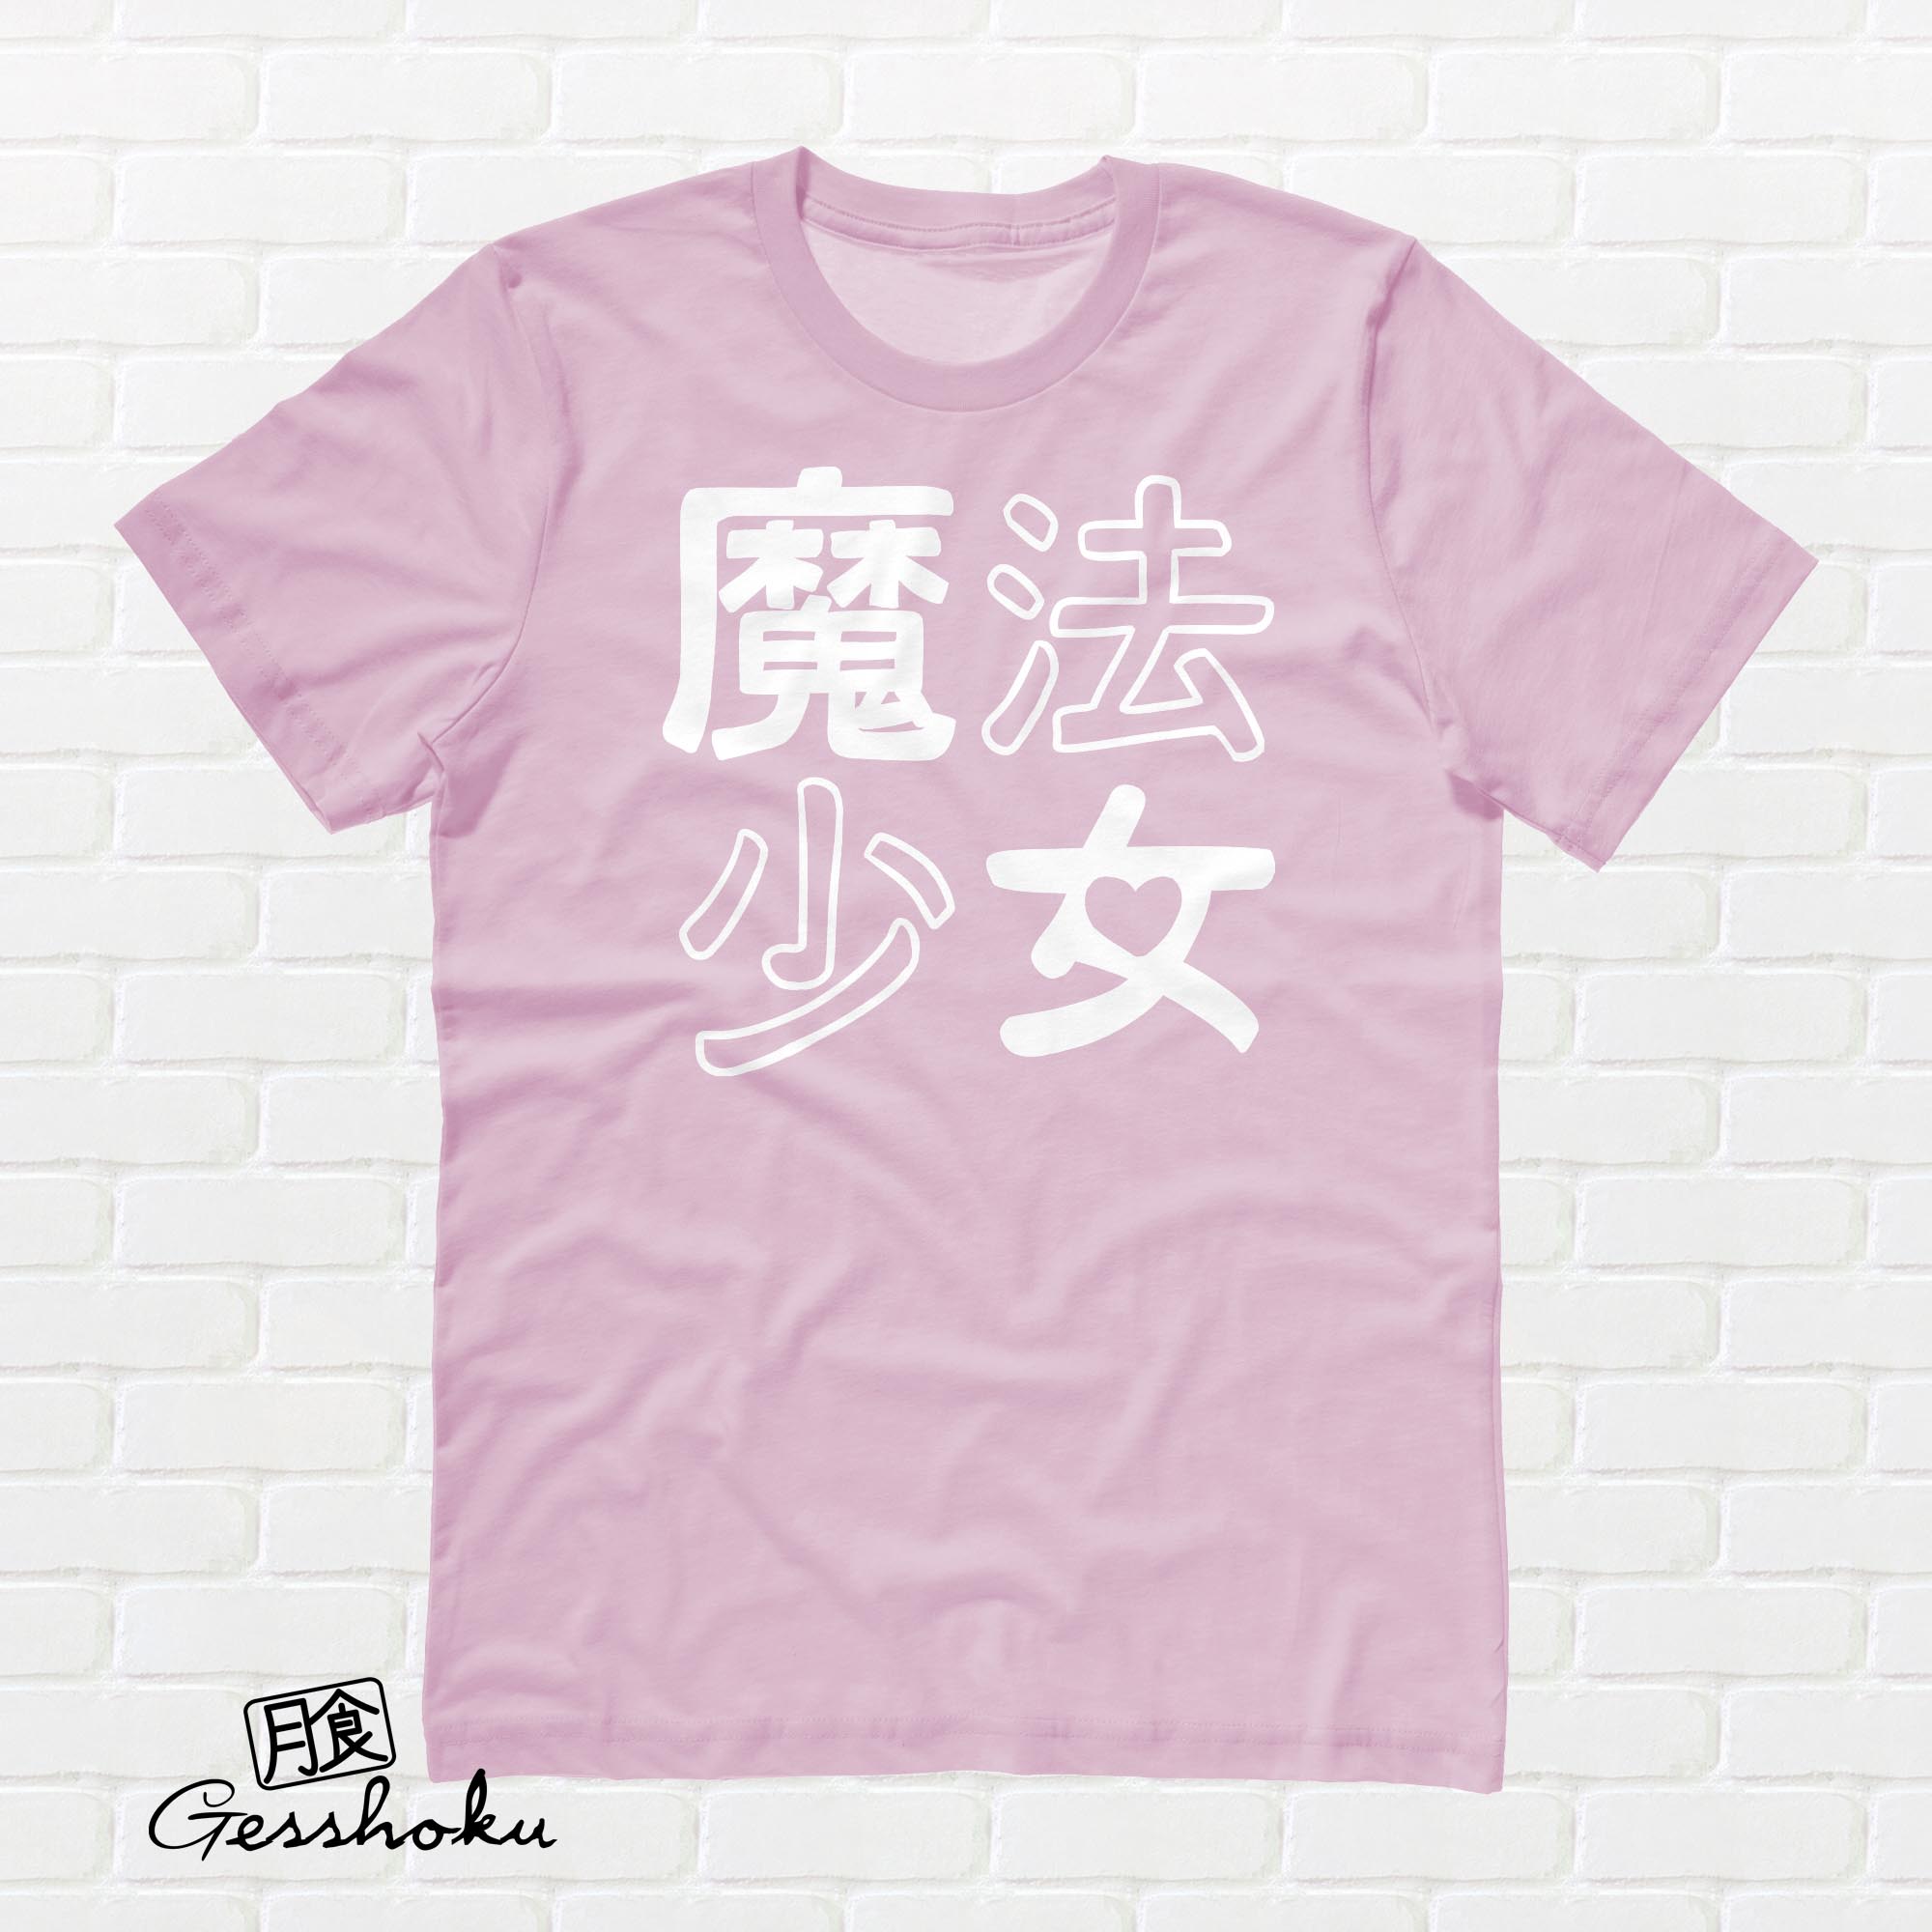 Mahou Shoujo T-shirt - Light Pink